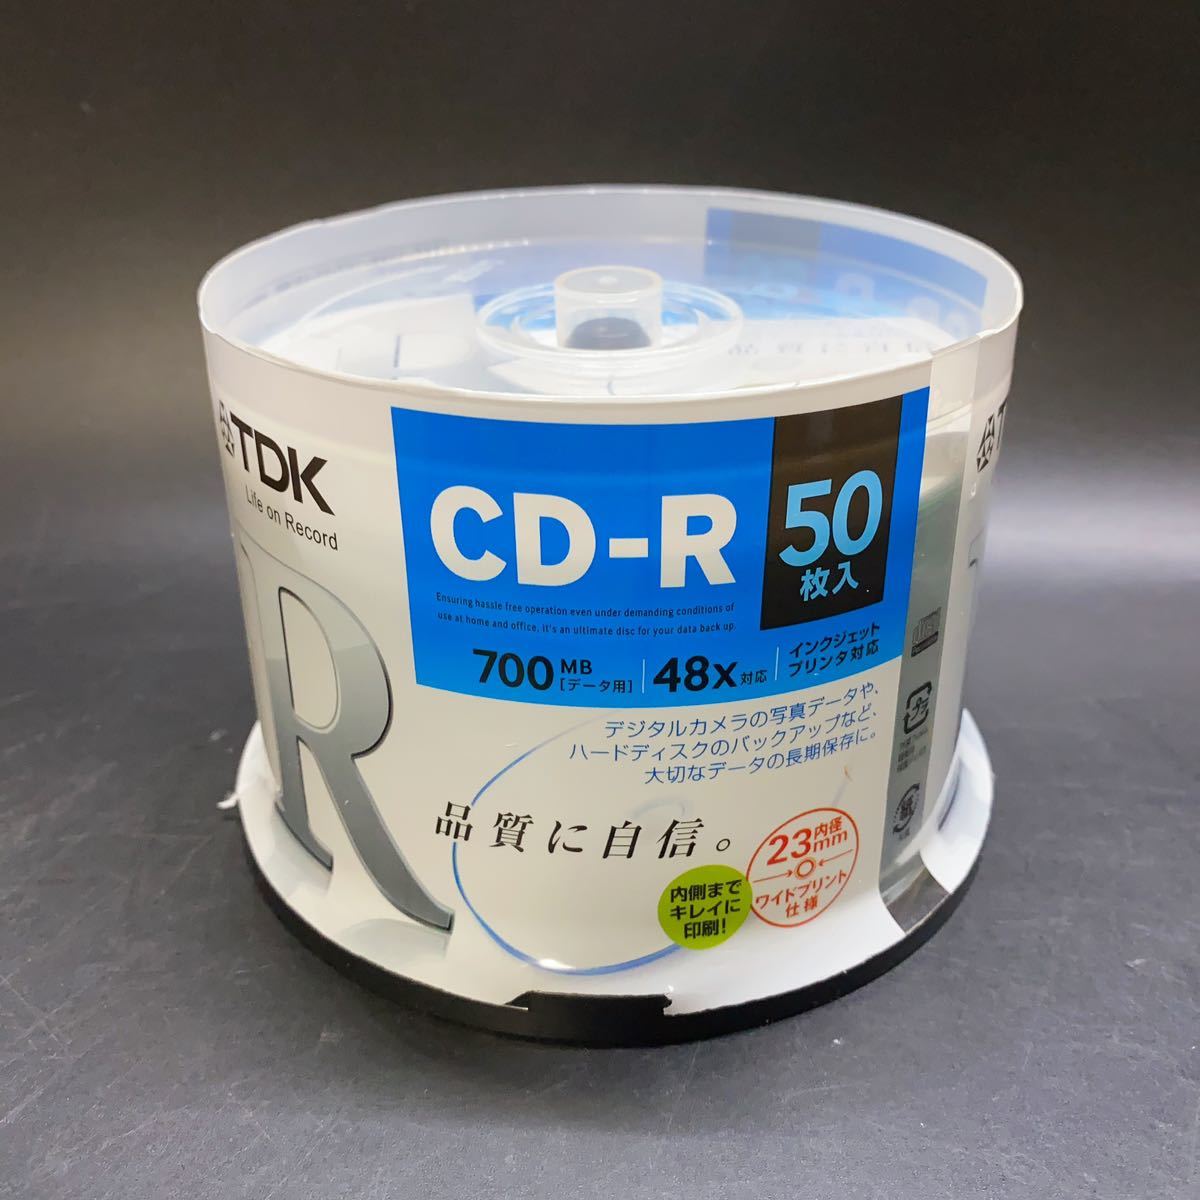 未開封 TDK データ用CD-R 700MB 48倍速対応 ホワイトワイドプリンタブル 50枚 スピンドル CD-R80PWDX50PE 稀少_画像1